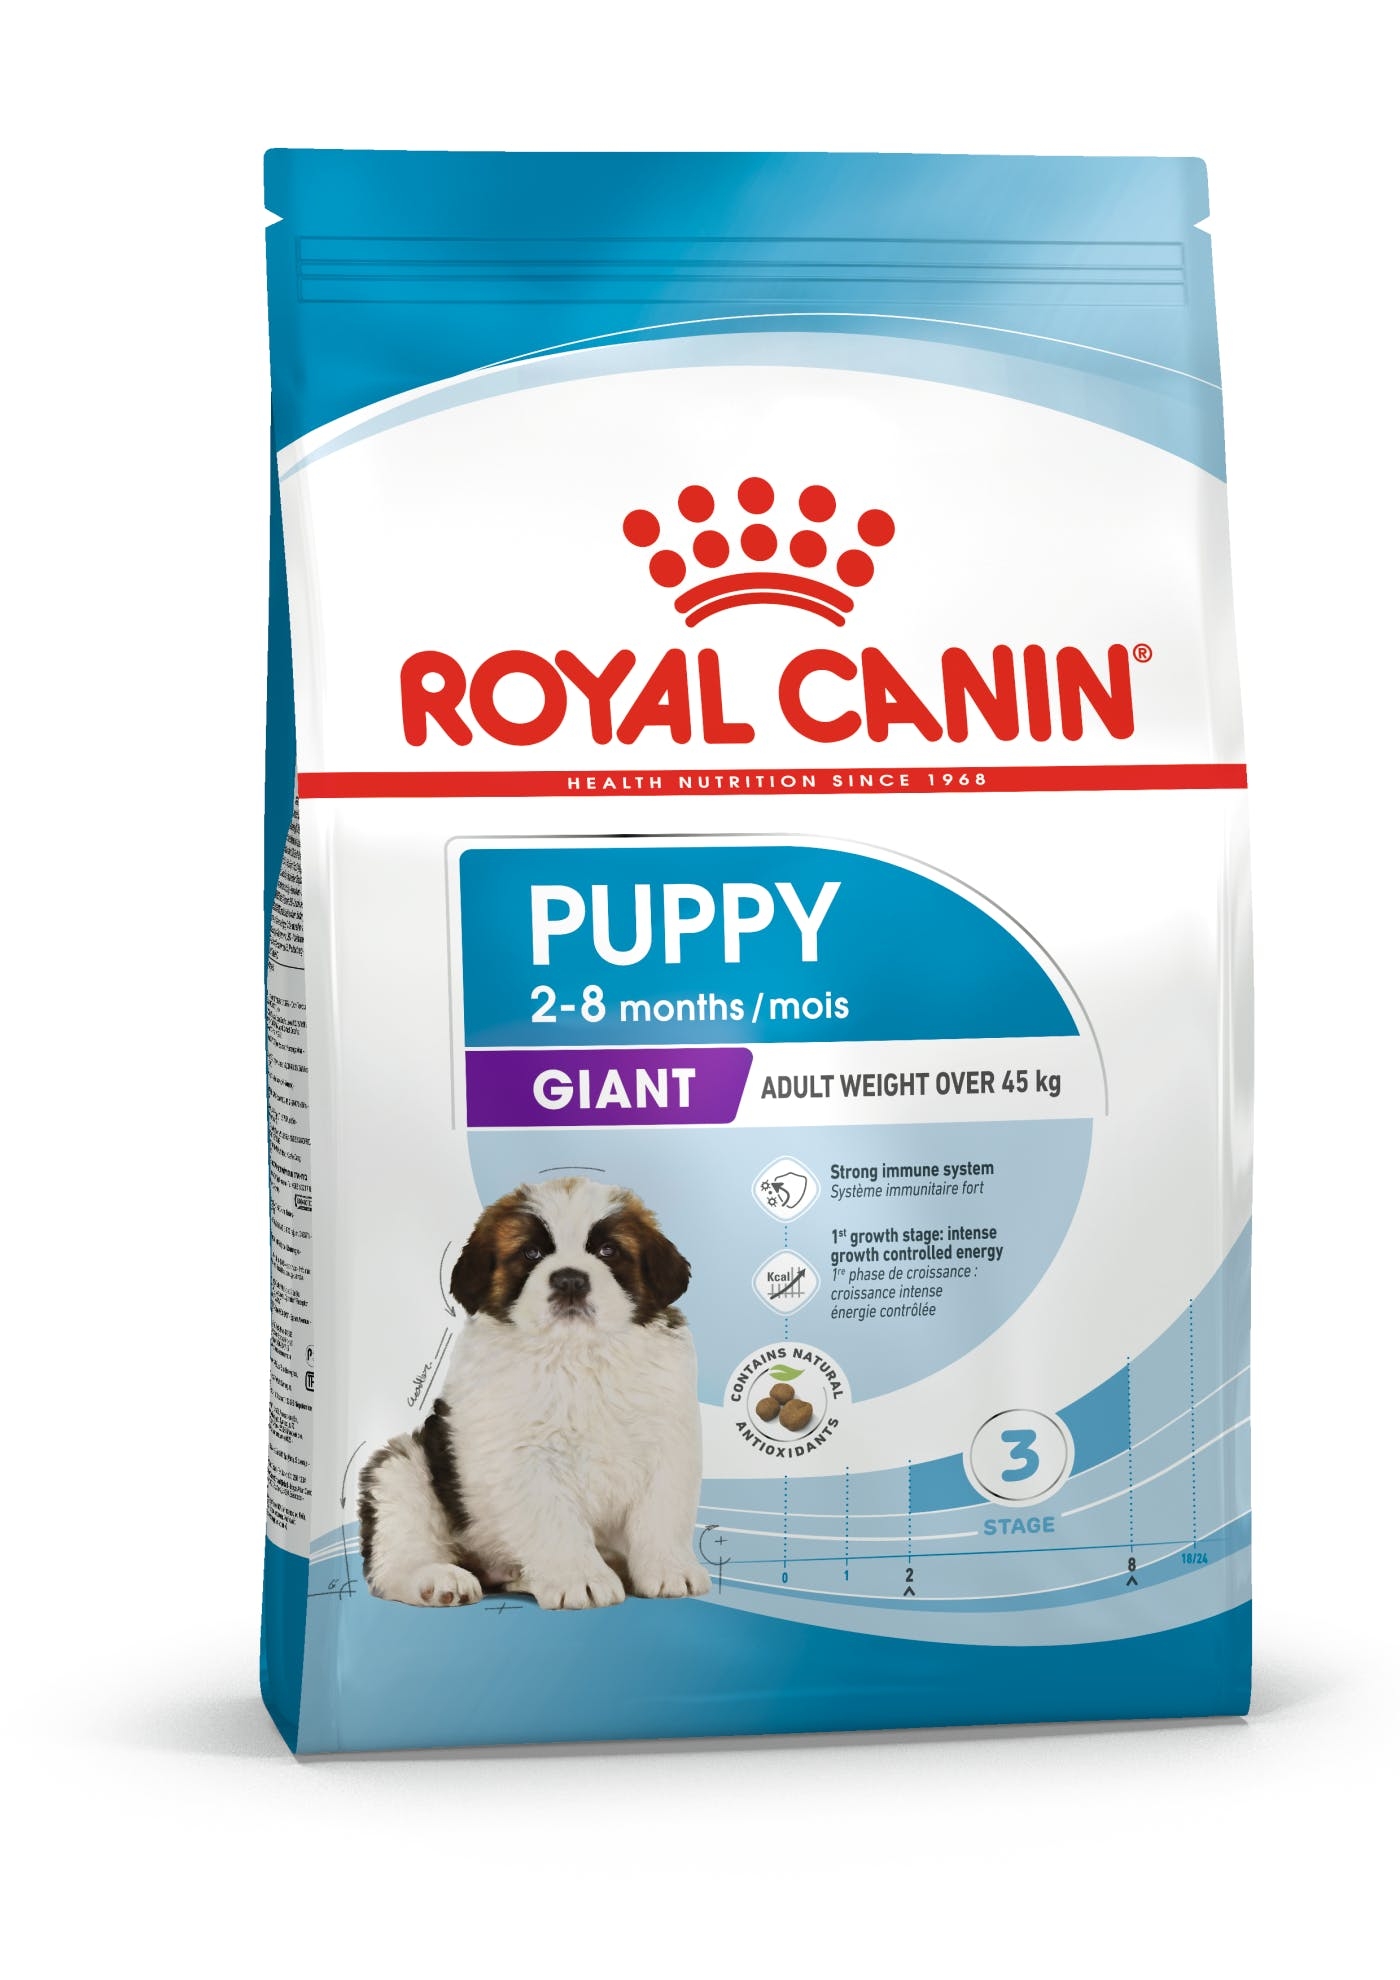 Royal Canin Giant Puppy. Op til 8 måneder. Voksenvægt over 45 kg. (15kg)